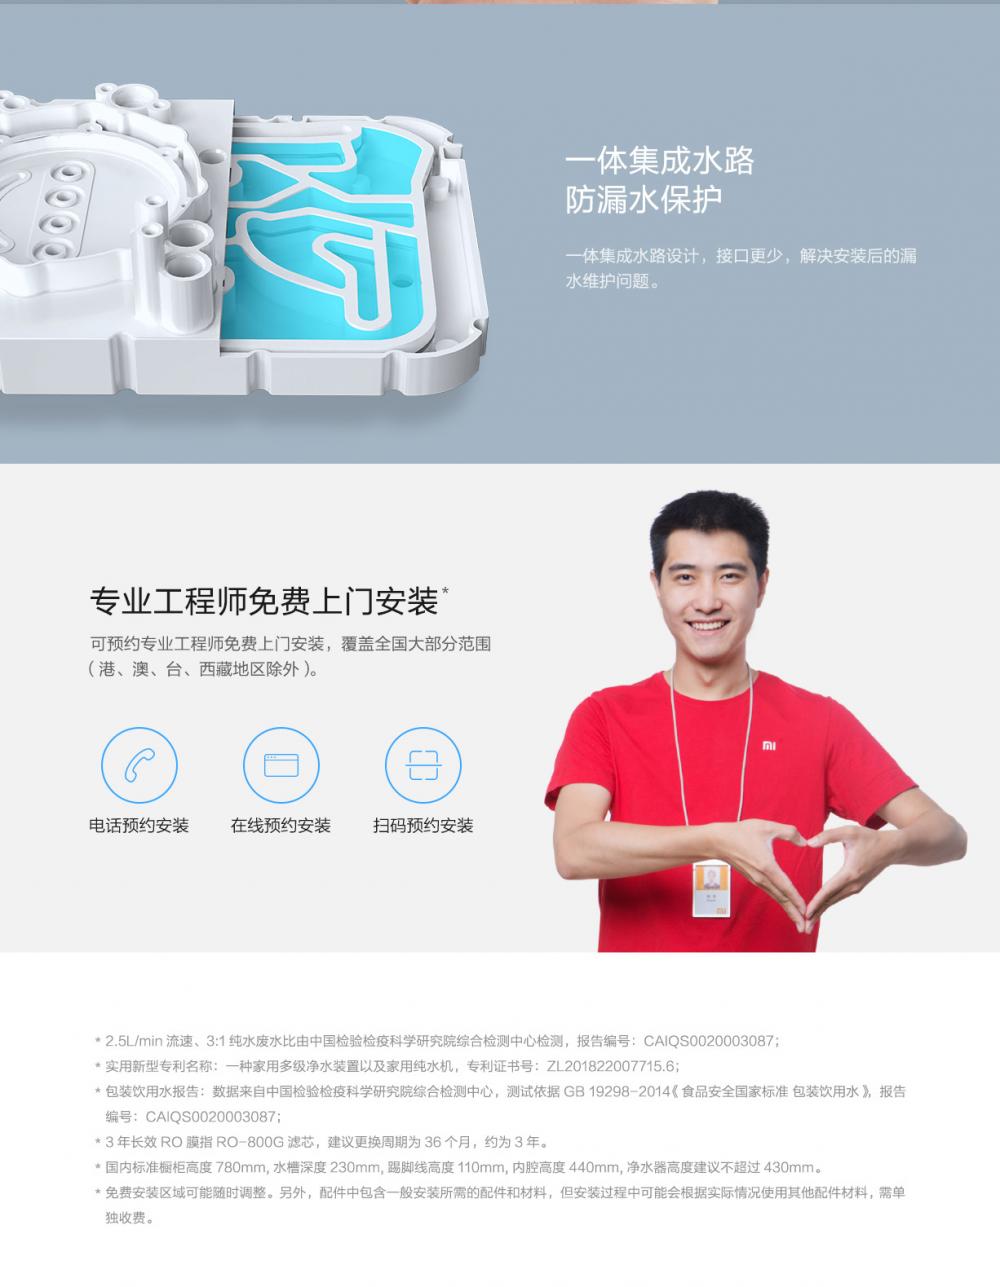 Xiaomi Water Purifier H1000g